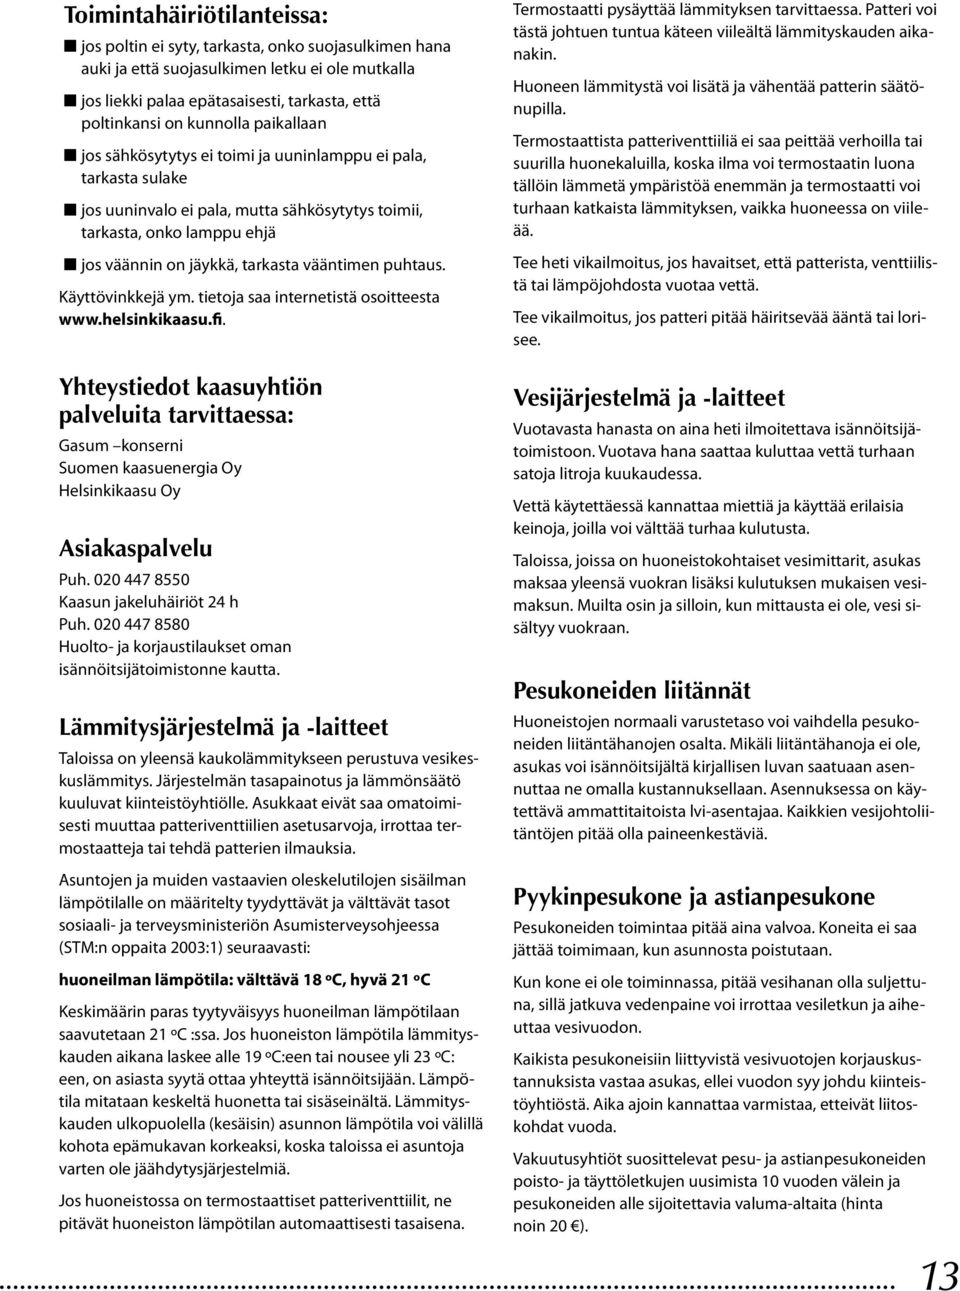 tarkasta vääntimen puhtaus. Käyttövinkkejä ym. tietoja saa internetistä osoitteesta www.helsinkikaasu.fi.